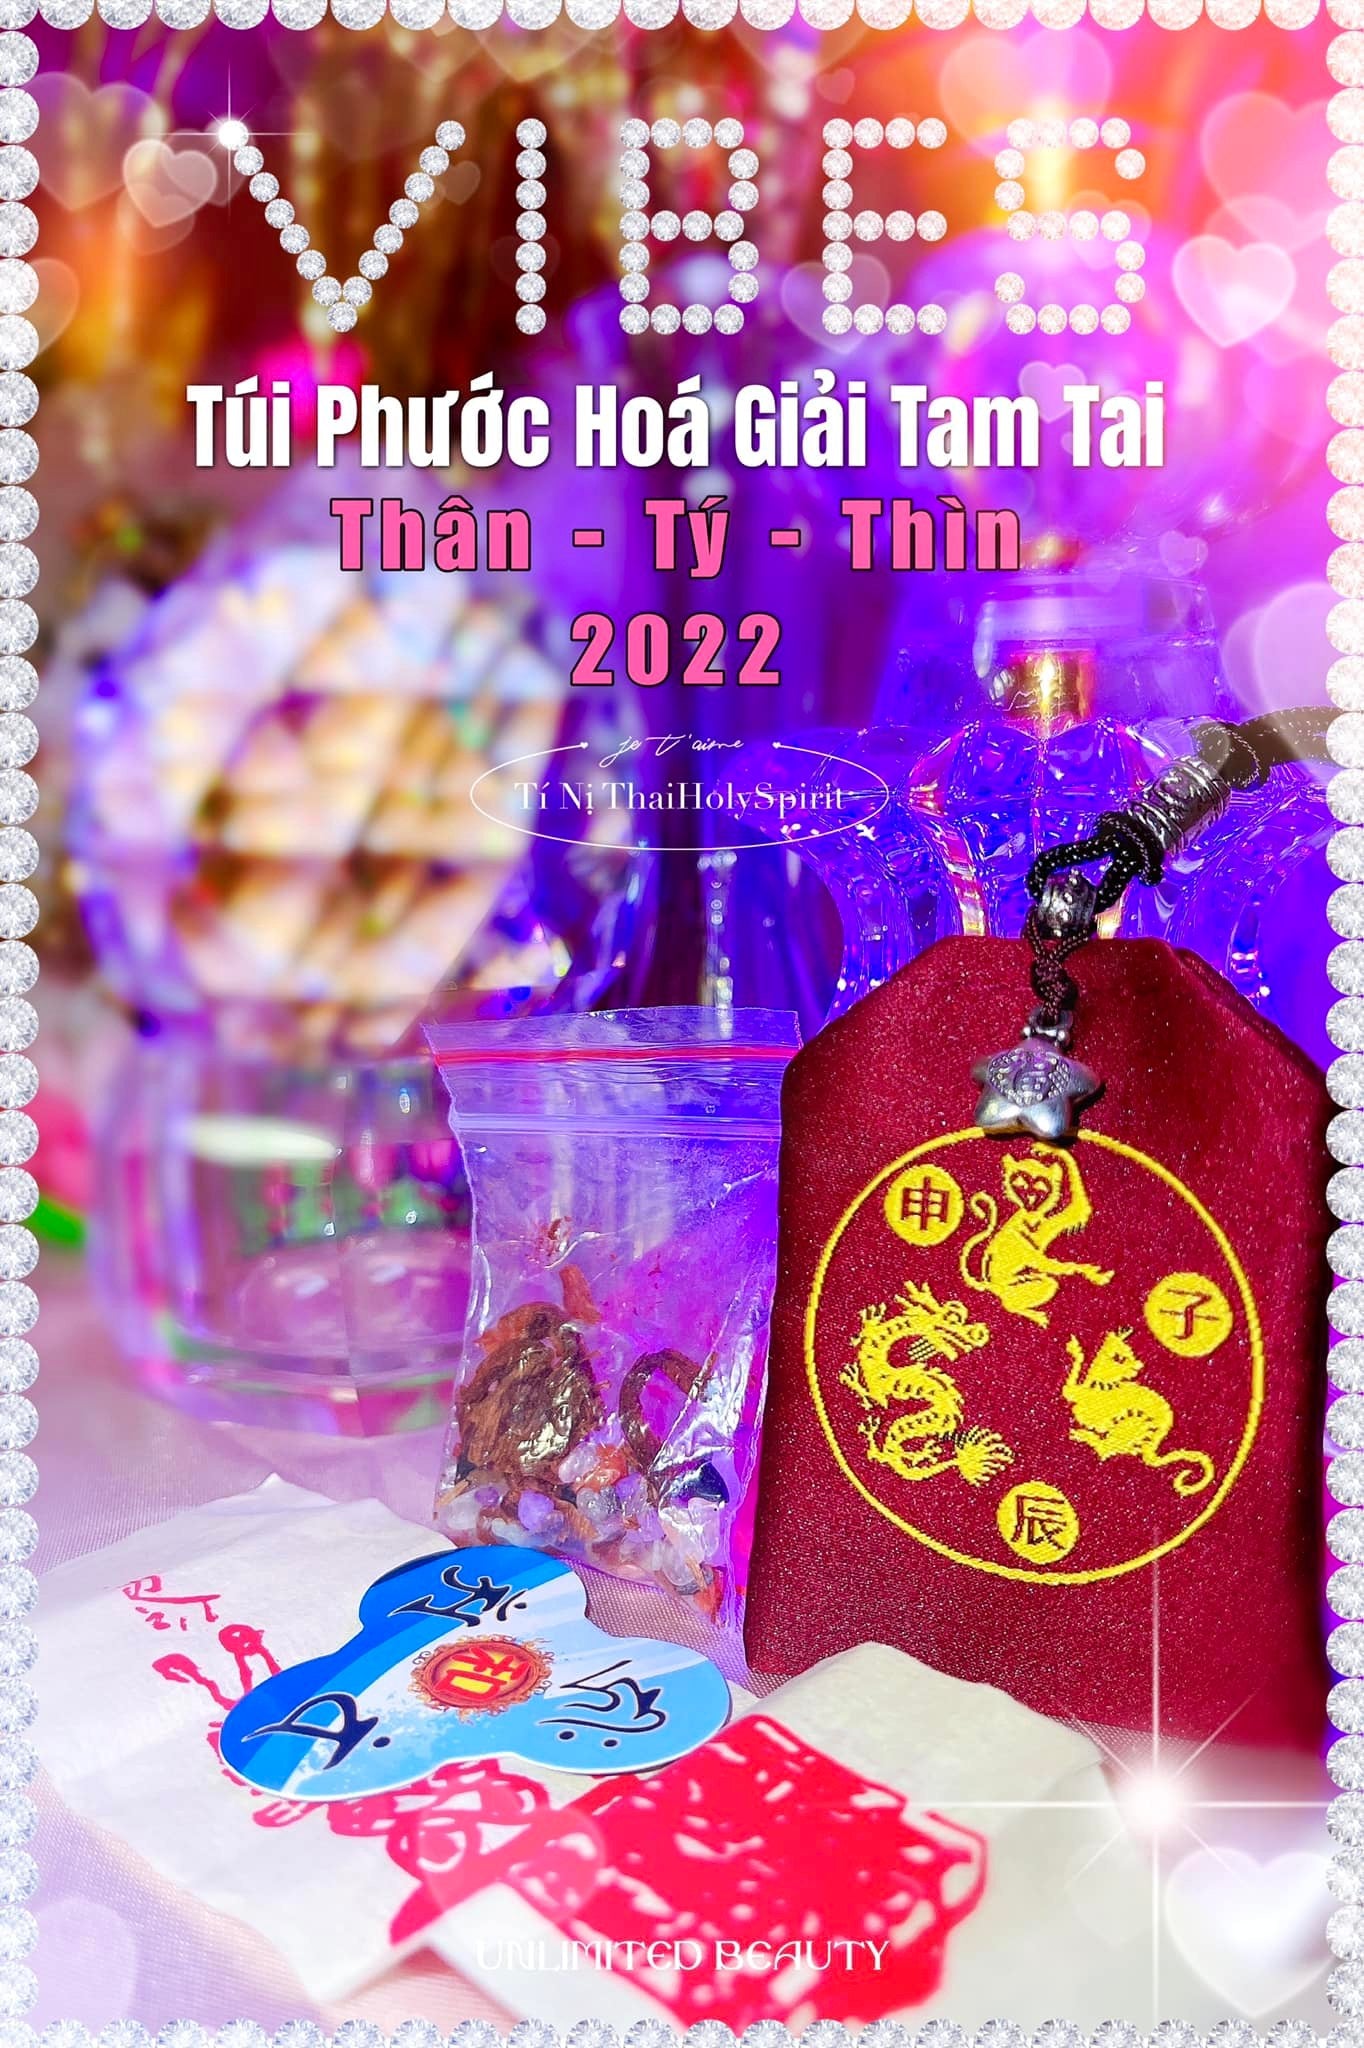 Túi Phước Hoá Giải Tam Tai (Thân - Tý - Thìn)